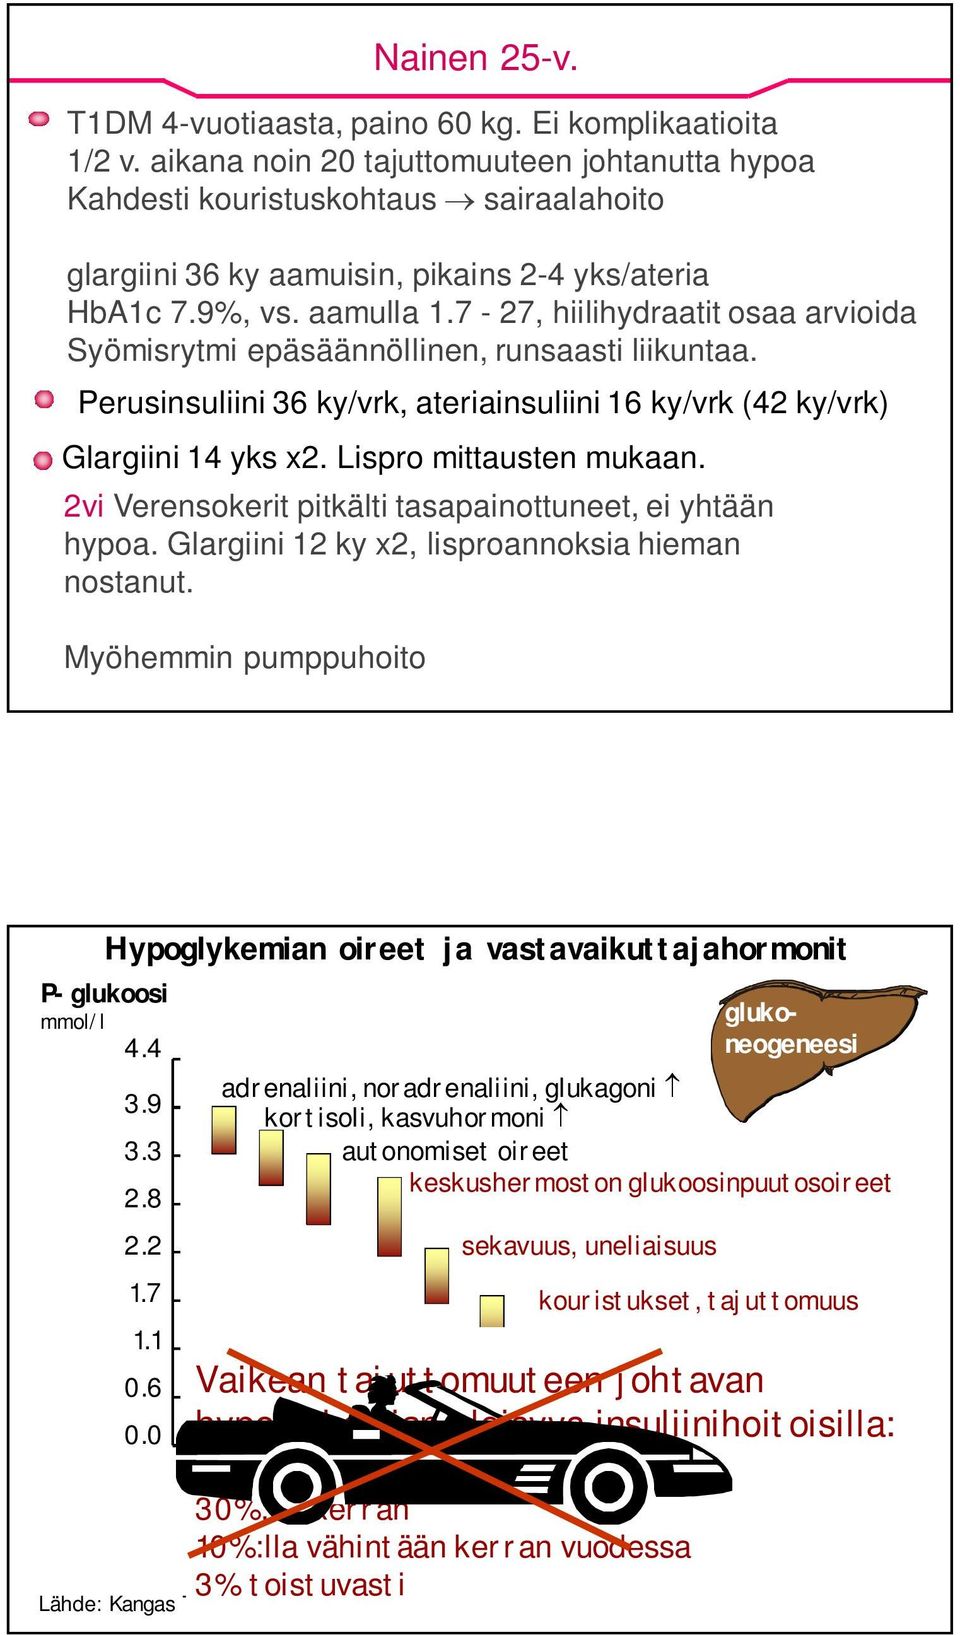 7-27, hiilihydraatit osaa arvioida Syömisrytmi epäsäännöllinen, runsaasti liikuntaa. Perusinsuliini 36 ky/vrk, ateriainsuliini 16 ky/vrk (42 ky/vrk) Glargiini 14 yks x2. Lispro mittausten mukaan.